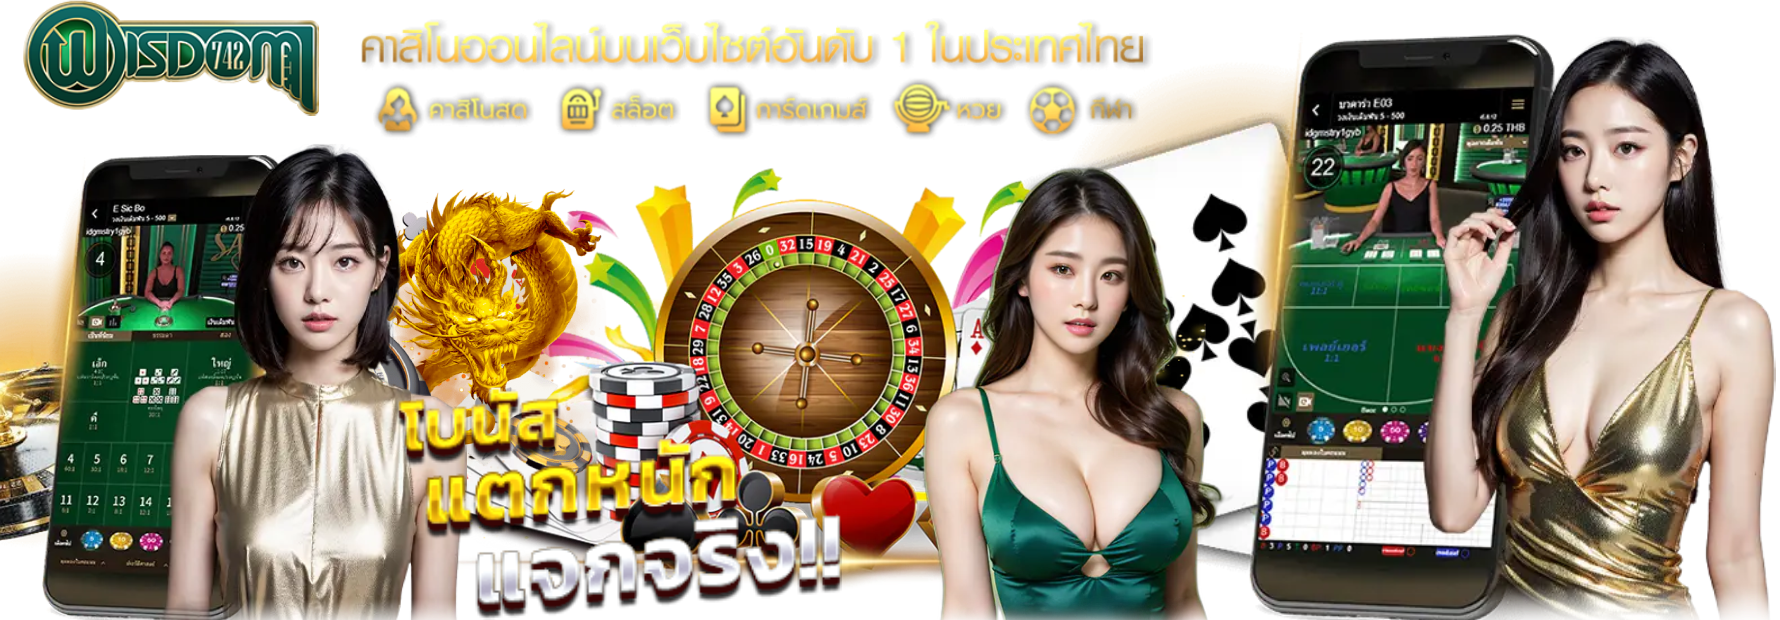 wisdom742 เว็บยอดนิยม คนไทยเล่นเยอะที่สุด